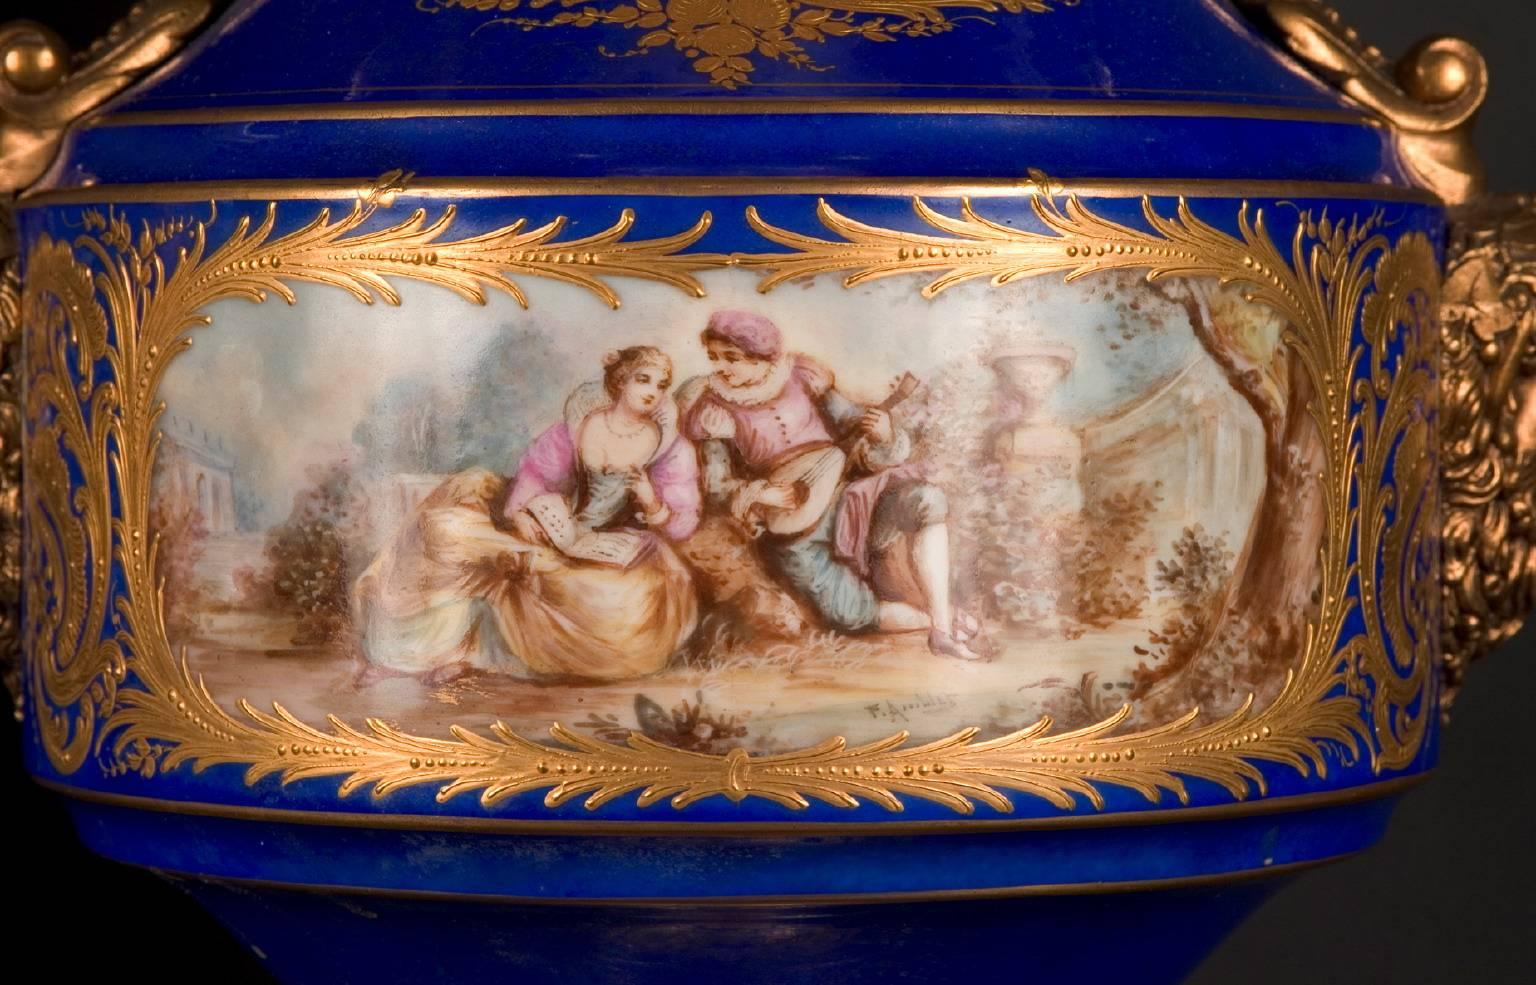 Cette paire de vases est réalisée en porcelaine de Paris d'une qualité exceptionnelle datant du XVIIIe siècle. Les montures en bronze sont recouvertes d'or et ont été ajoutées au XIXe siècle. La porcelaine elle-même est d'un bleu phénoménal avec des